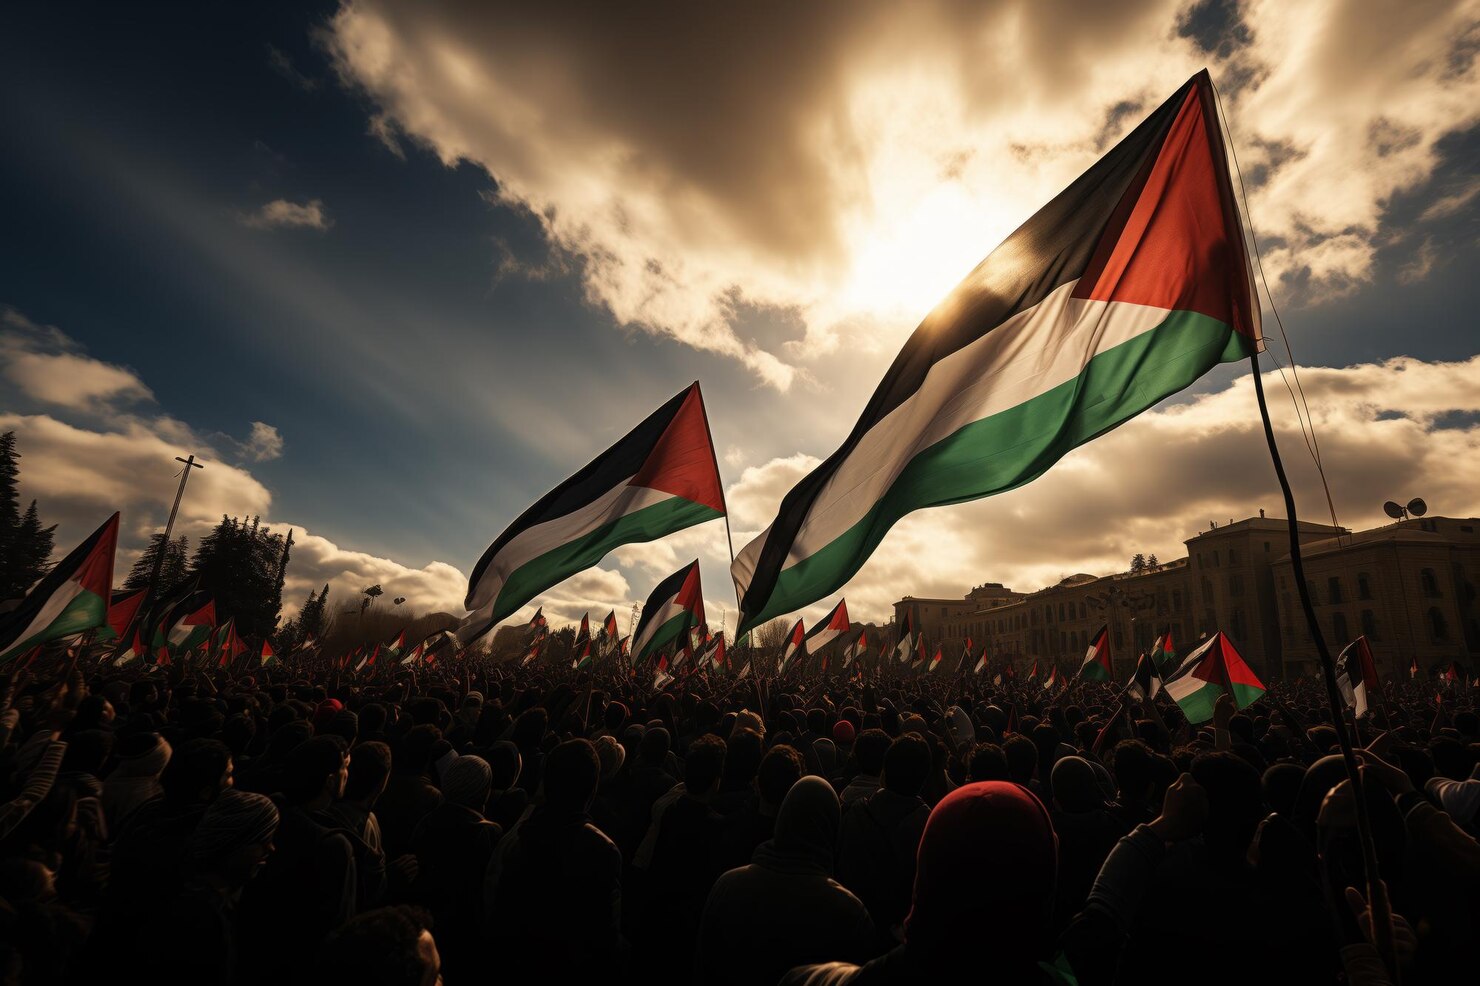 Ilustrasi bendera palestina. (Foto/freepik)